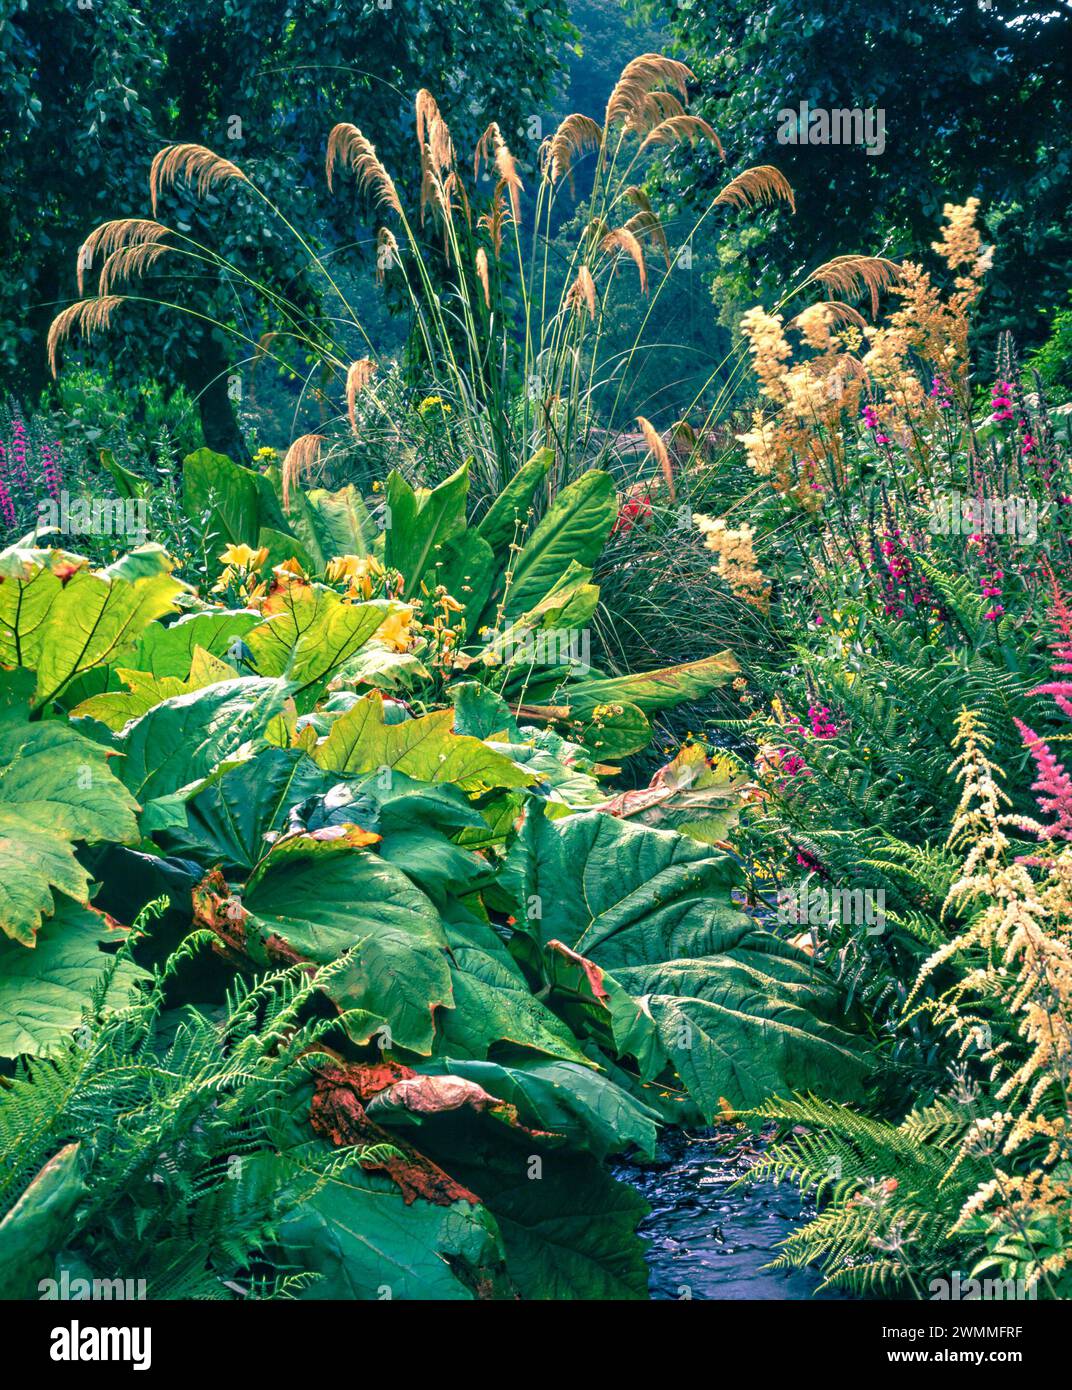 Moorgarten mit Gunnera magellanica, hohen stipa-Gräsern und Astilben, die in den 1990er Jahren in den Marwood Hill Gardens in Devon, England, Großbritannien, gedeihen Stockfoto